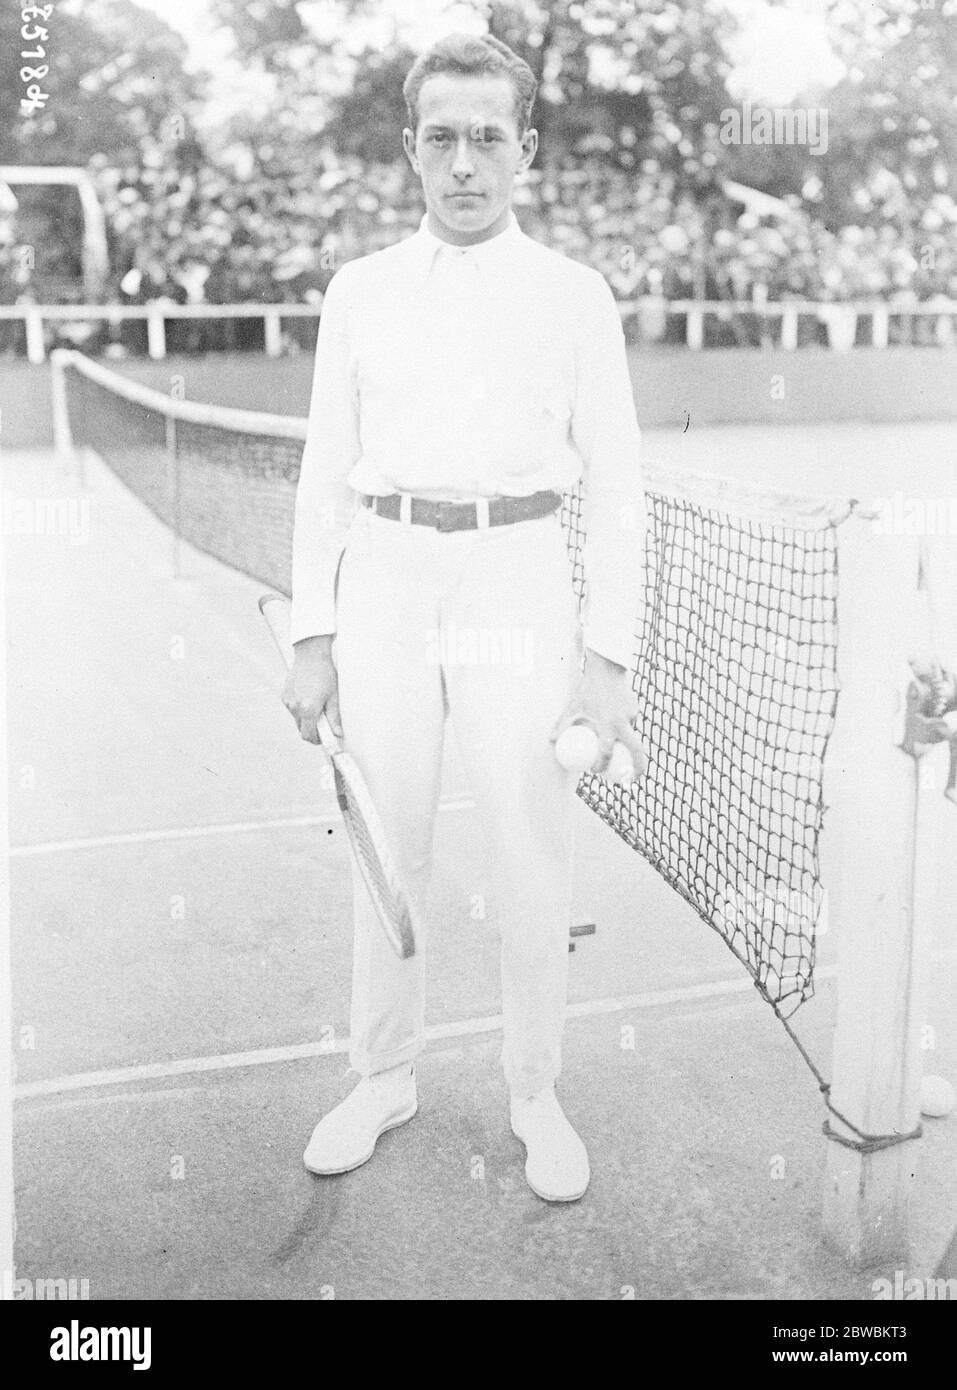 Campioni di tennis dilettanti e professionisti del mondo si incontrano a Parigi Chocet , il campione di tennis dilettante del mondo, incontra D' Arsonval , il campione professionale del mondo a Parigi Cochet 13 marzo 1923 Foto Stock